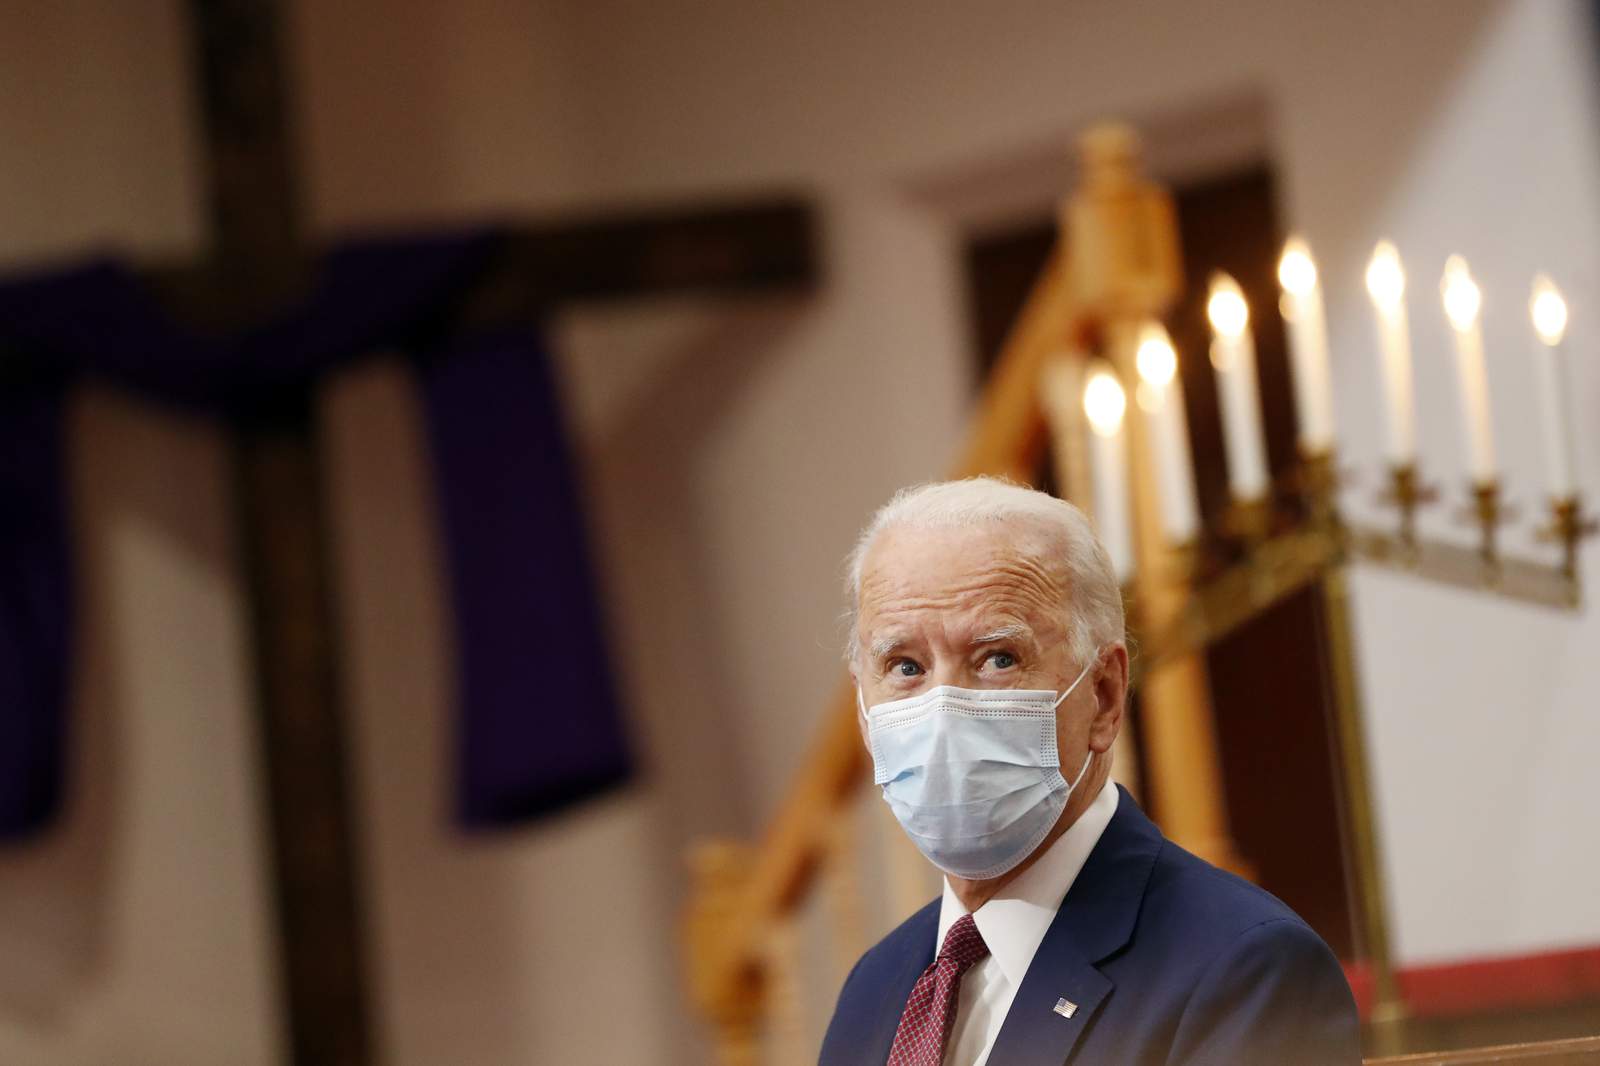 WATCH: Joe Biden to speak about unrest across country following George Floyds death